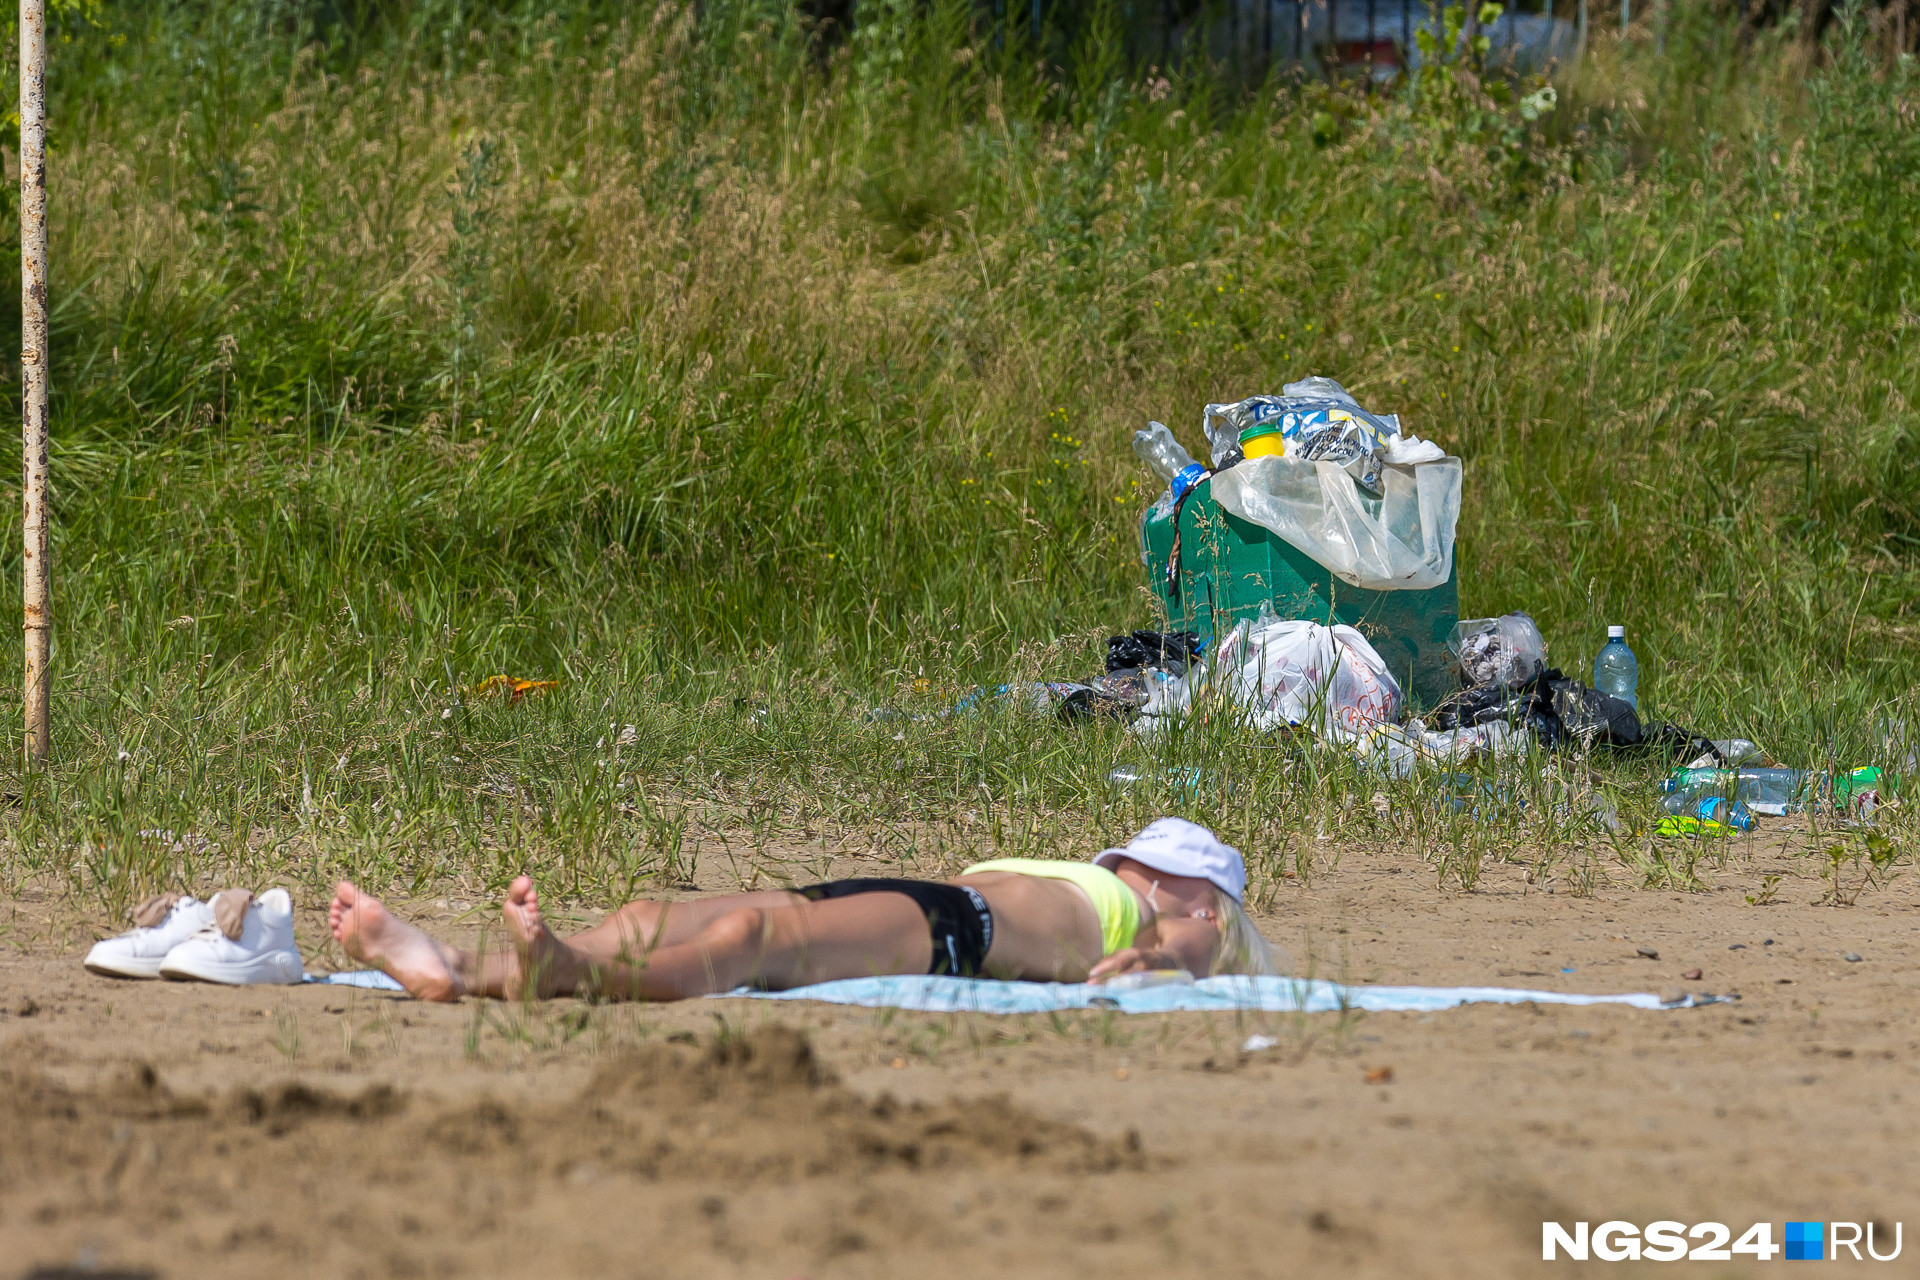 Раз официально пляжи не работают, то и мусор особо никто не убирает, но ради загара можно и потерпеть